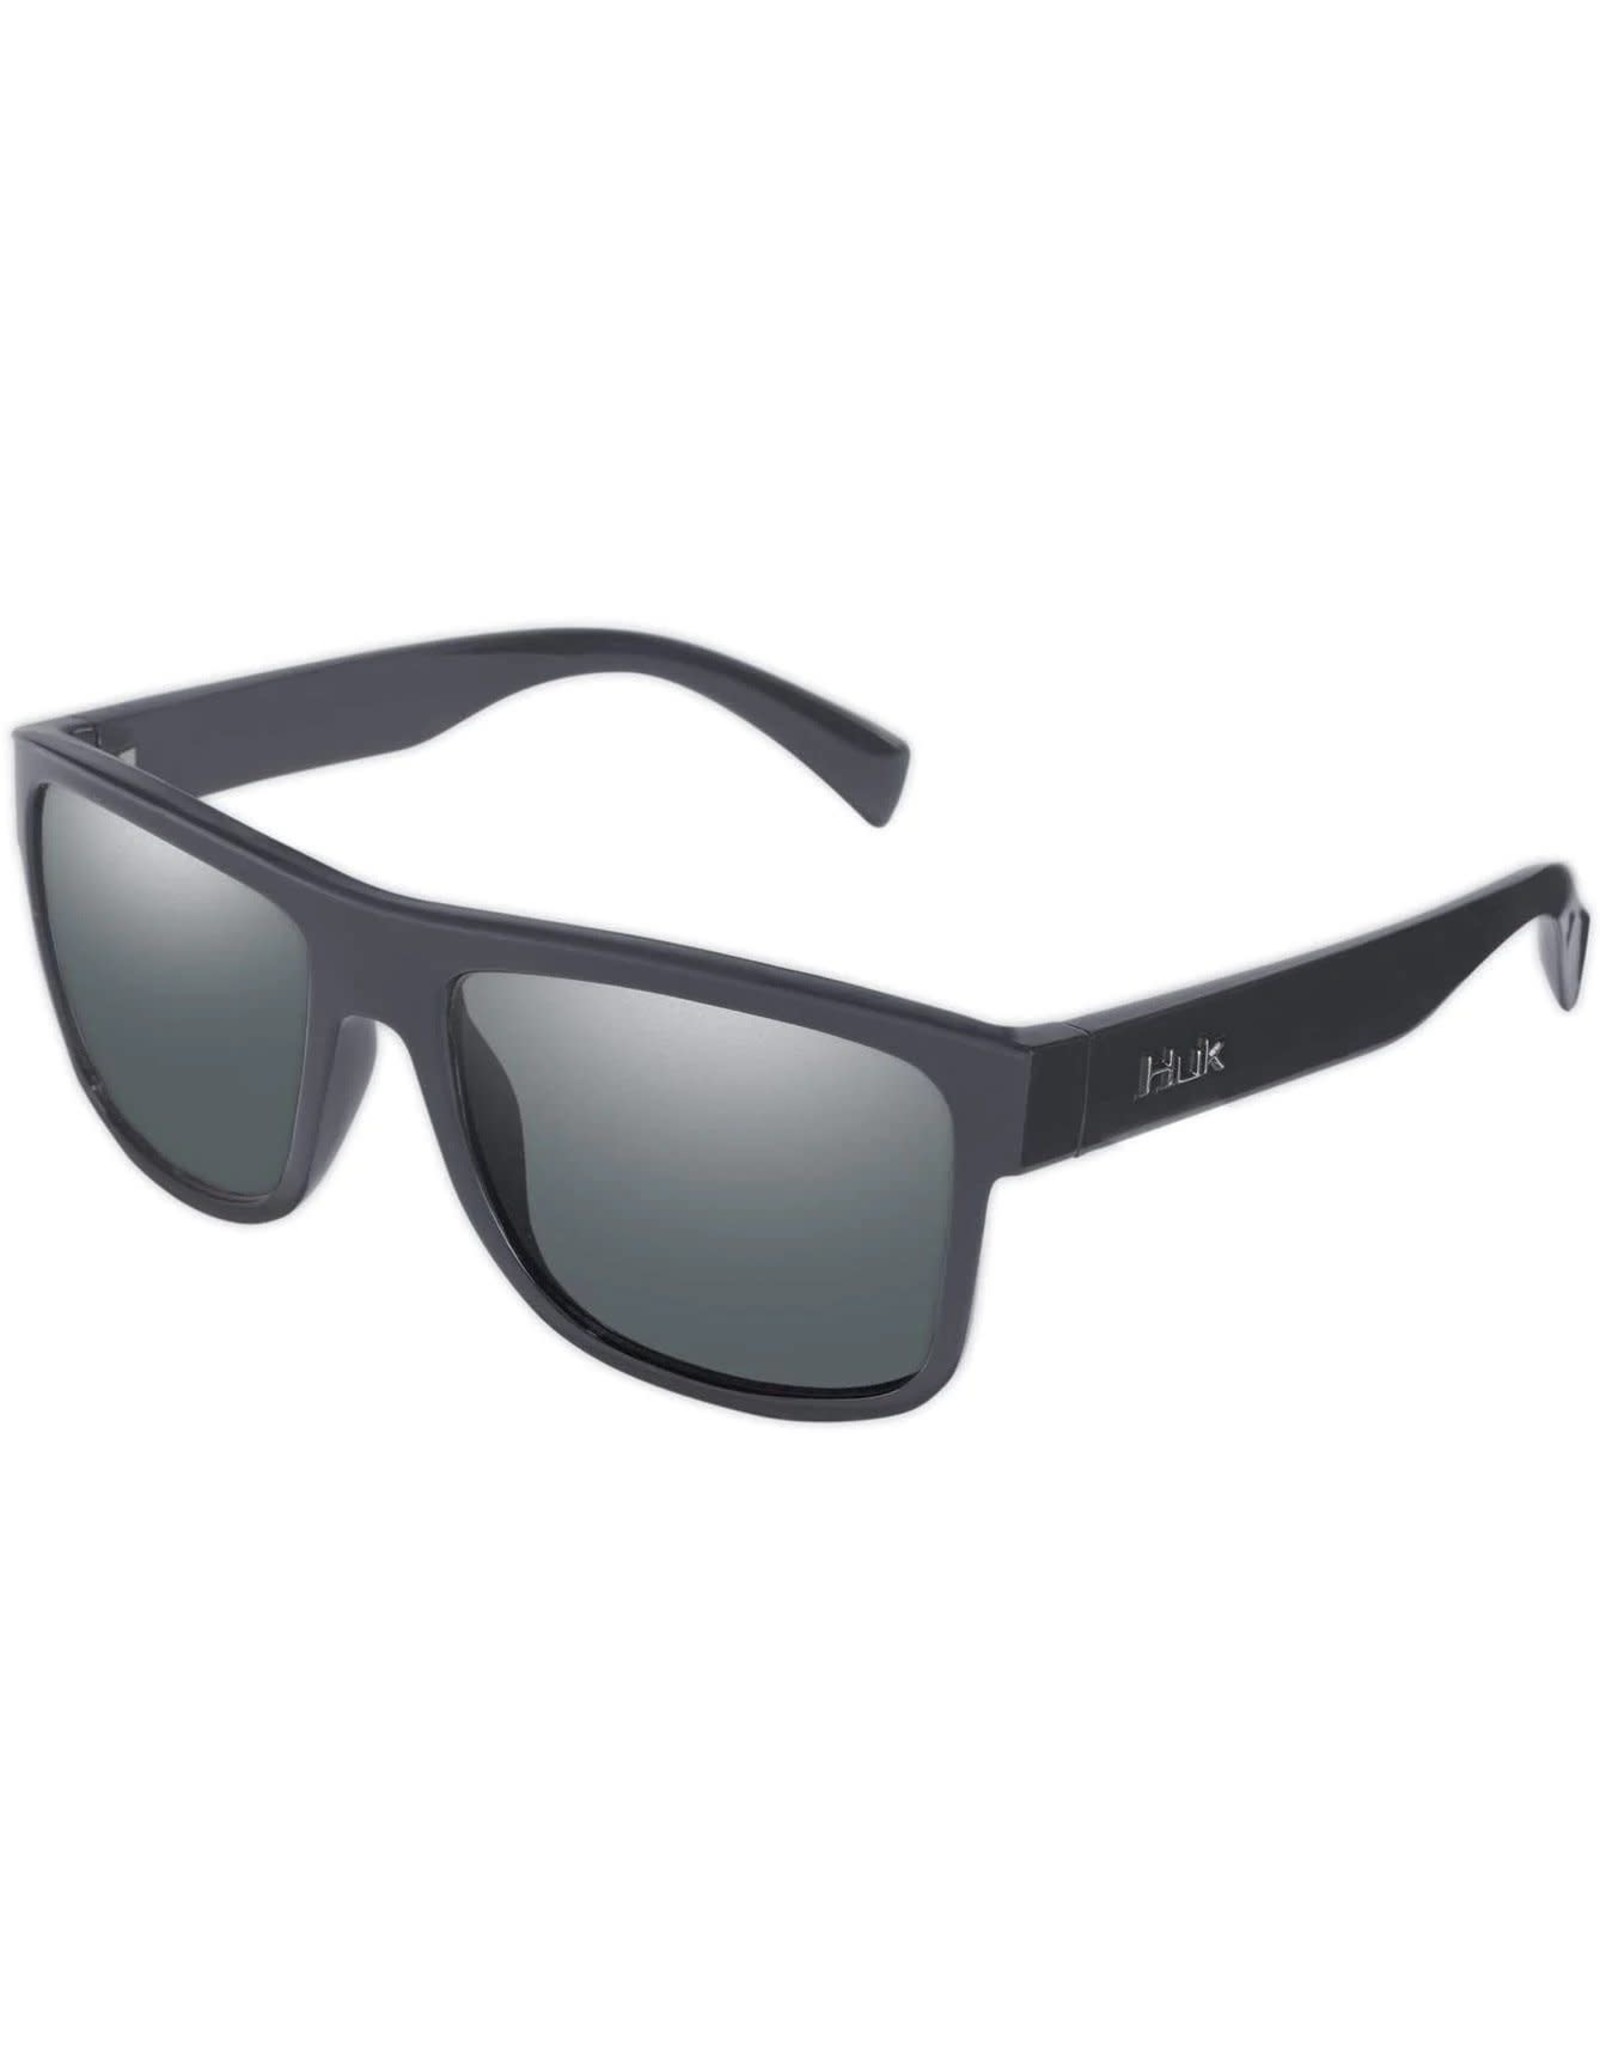 Huk Huk Clinch Polarized Sunglasses, Gray Lens / Matte Black Frame